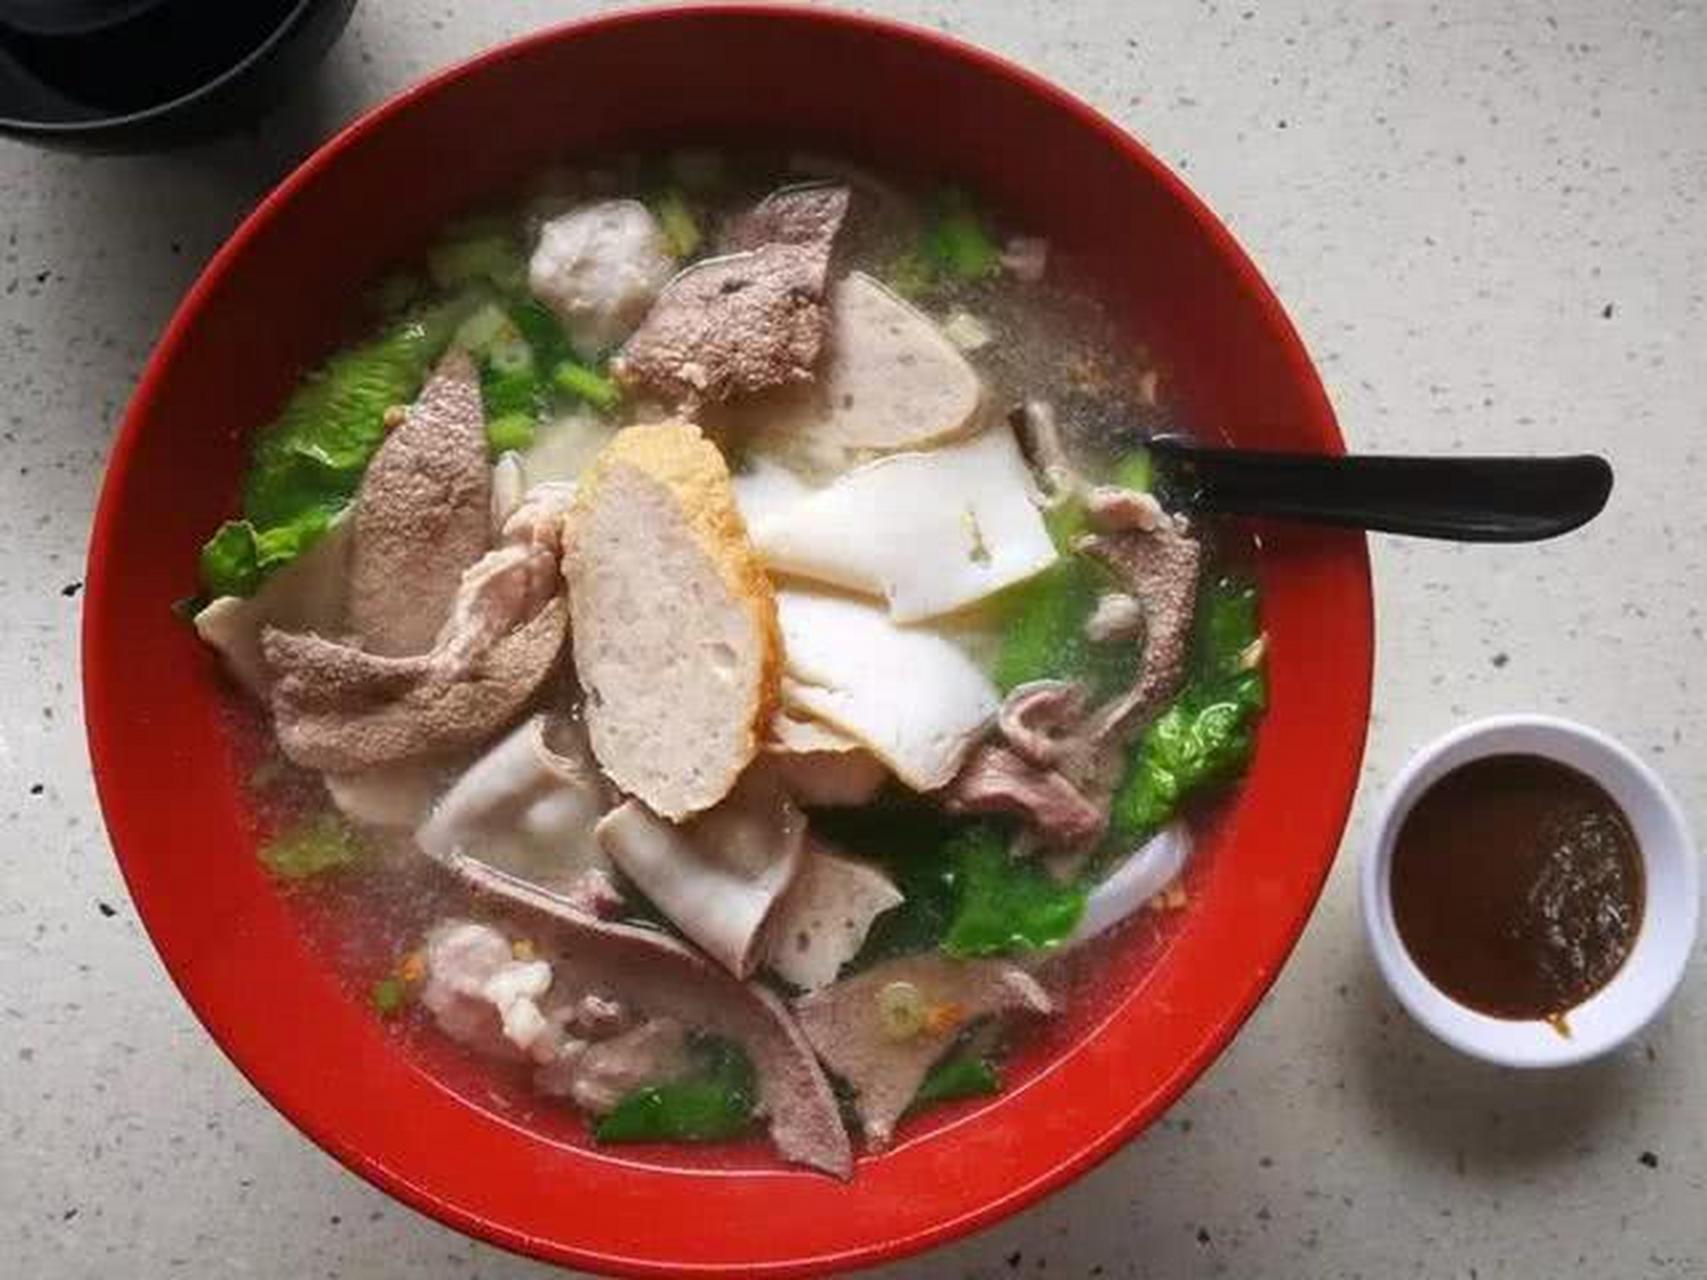 在潮汕地区,他们还爱加入粿条做成猪杂粿条汤,各式猪杂加上肉丸,肉条